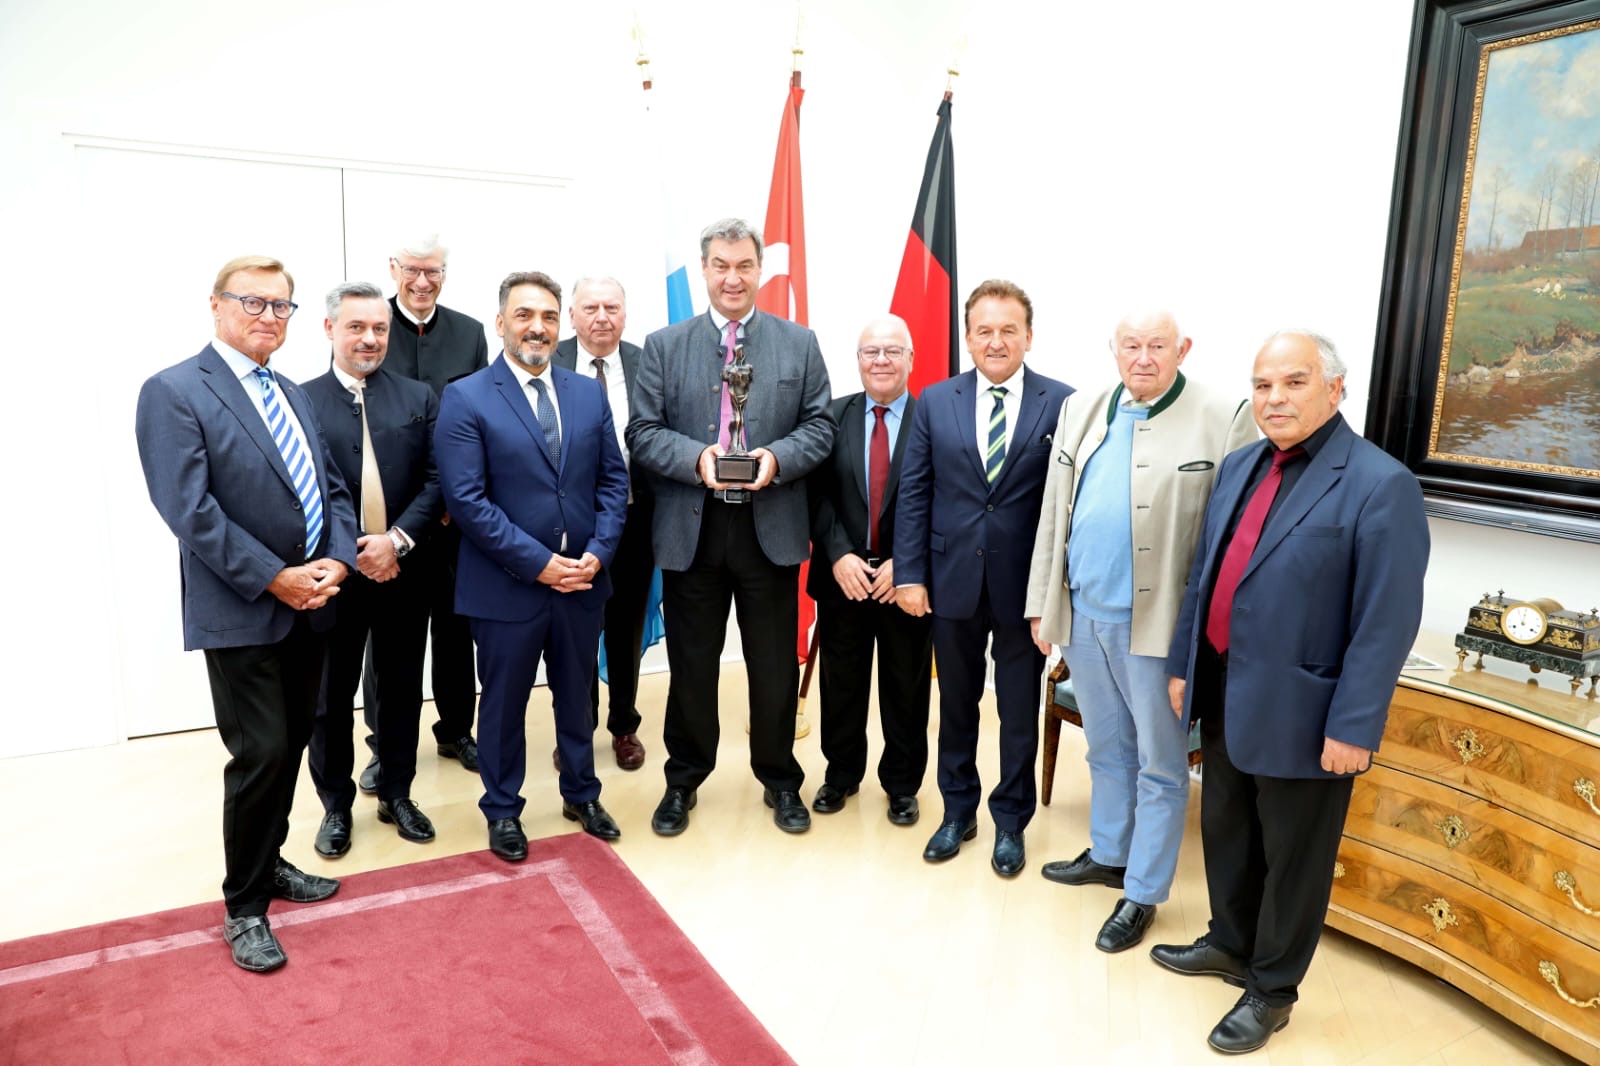 Türk Alman Dostluk Federasyonu Genel Başkanı Cihan Sendan, Bavyera Başbakanı Dr. Markus Söder’e Kybele onur ödülünü takdim etti.